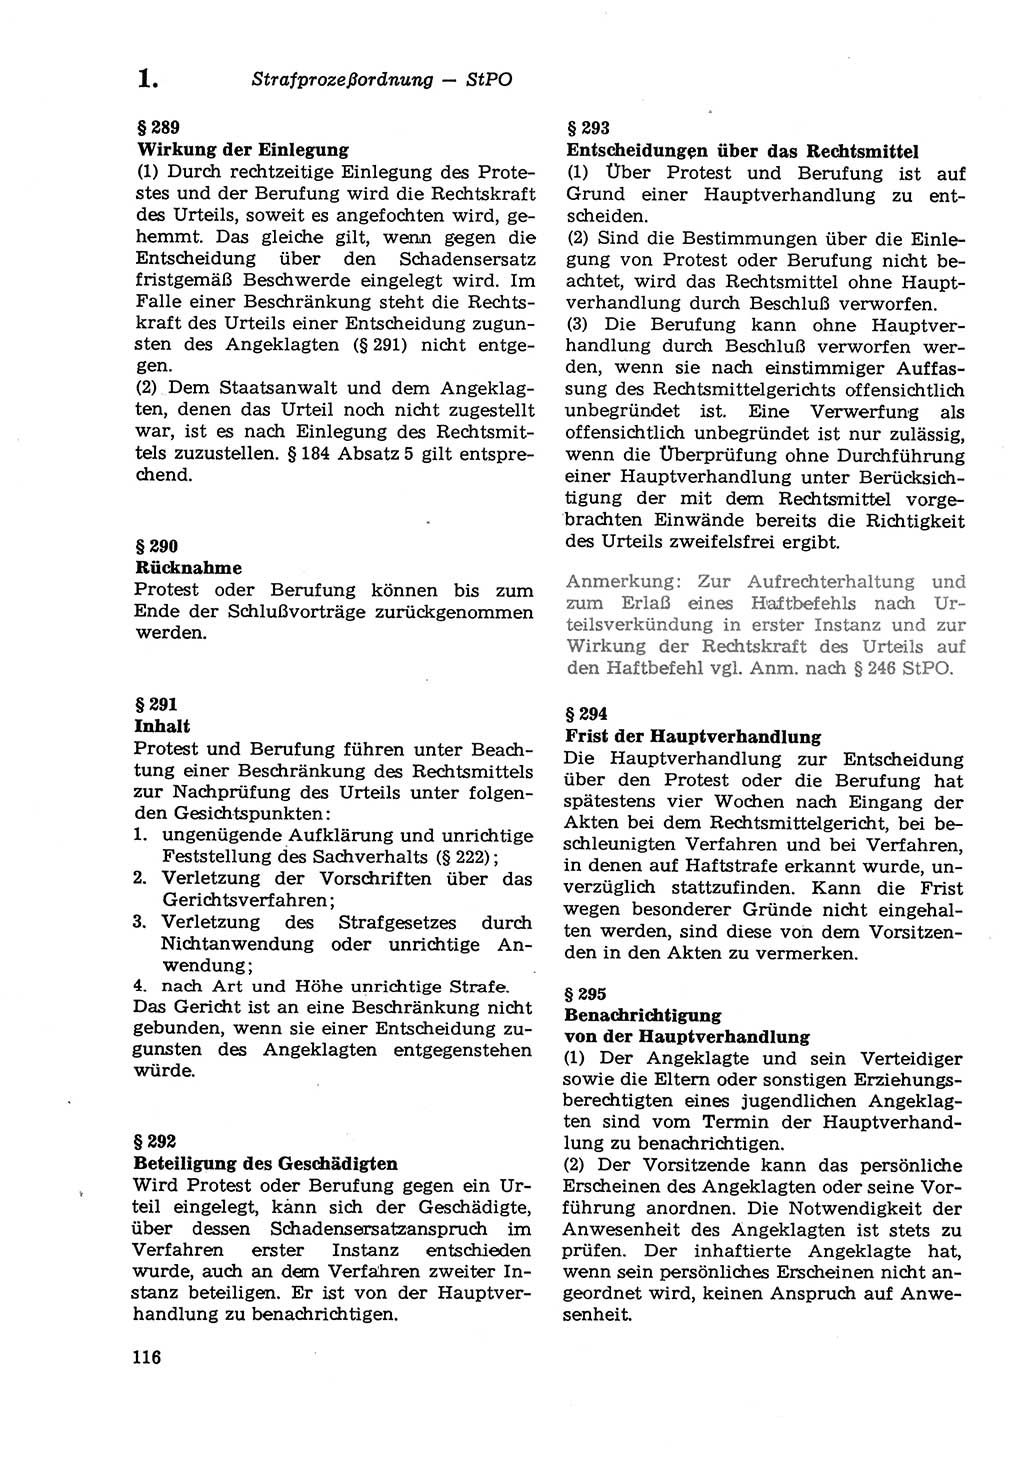 Strafprozeßordnung (StPO) der Deutschen Demokratischen Republik (DDR) sowie angrenzende Gesetze und Bestimmungen 1979, Seite 116 (StPO DDR Ges. Best. 1979, S. 116)